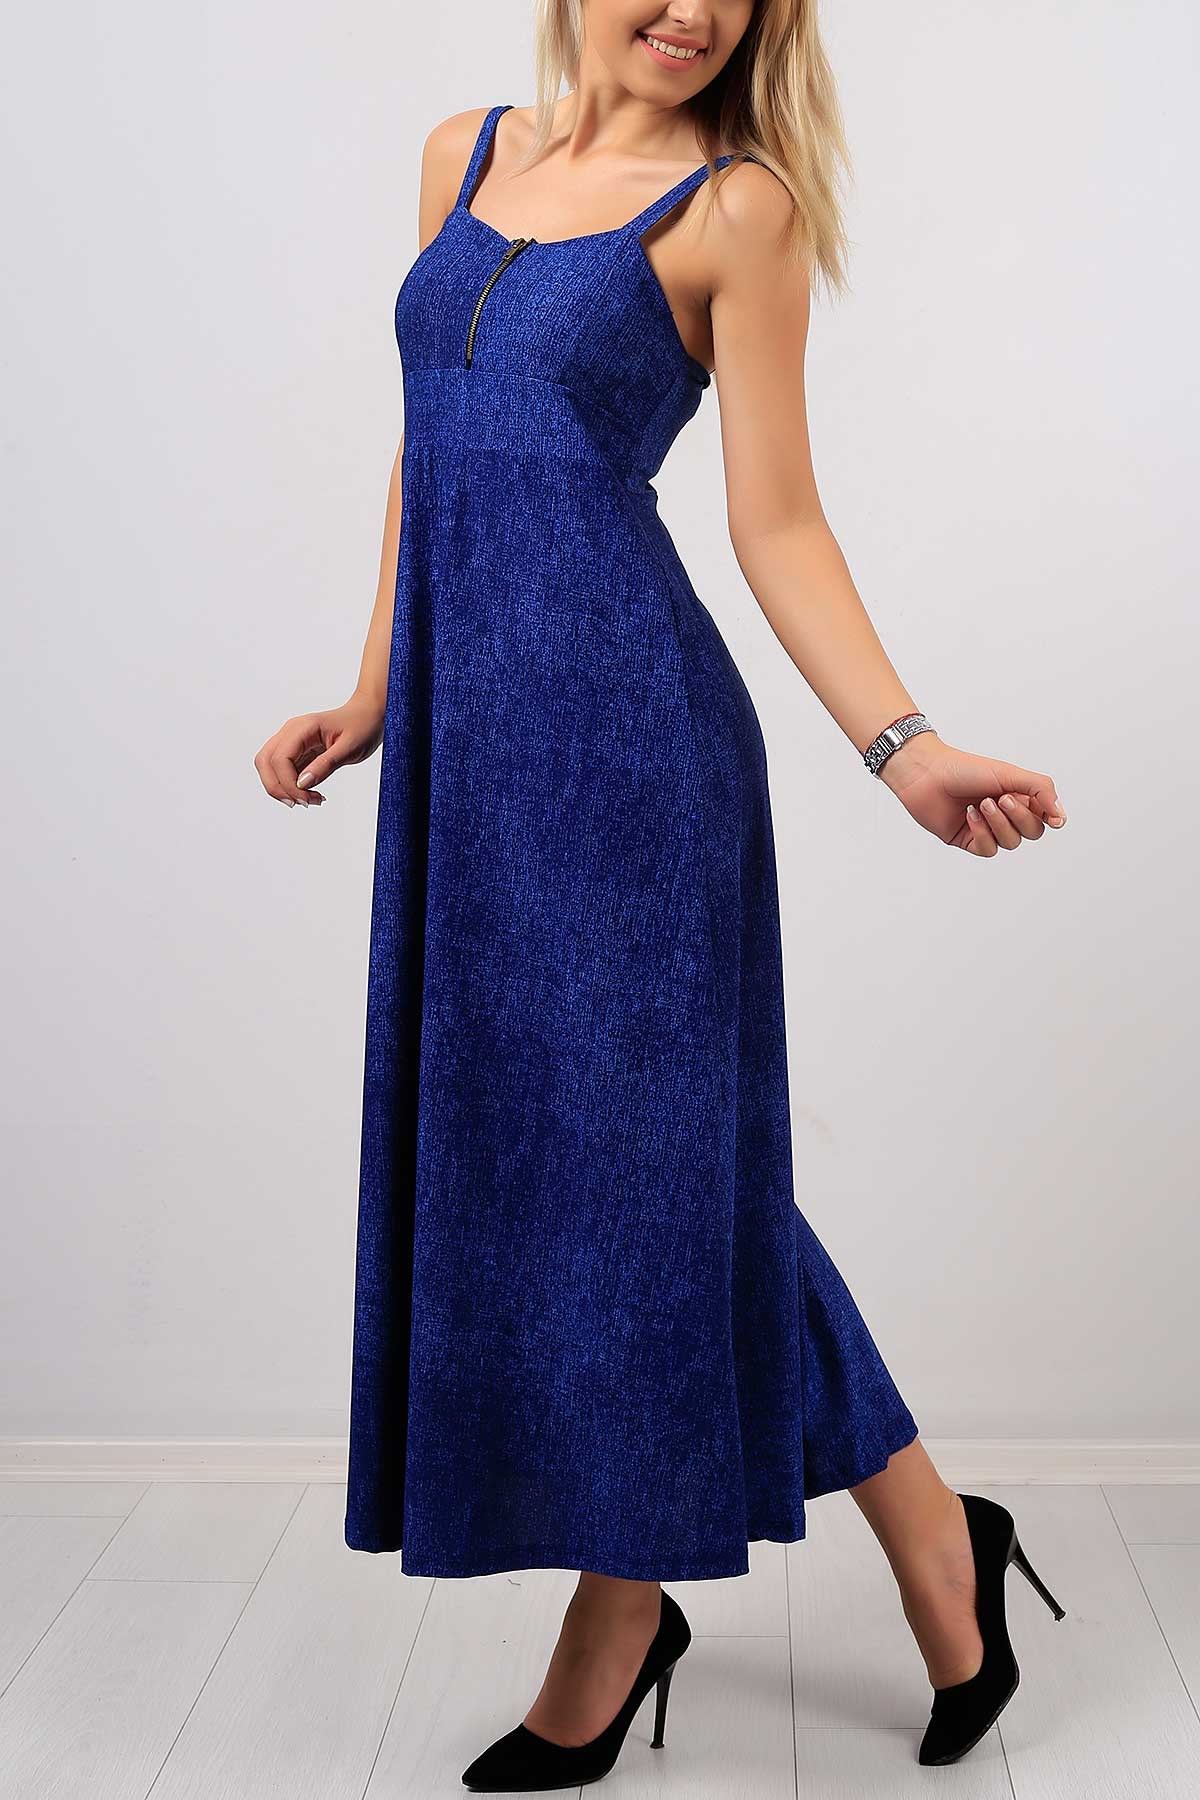 Fermuar Detay Askılı Mavi Bayan Elbise 7766B